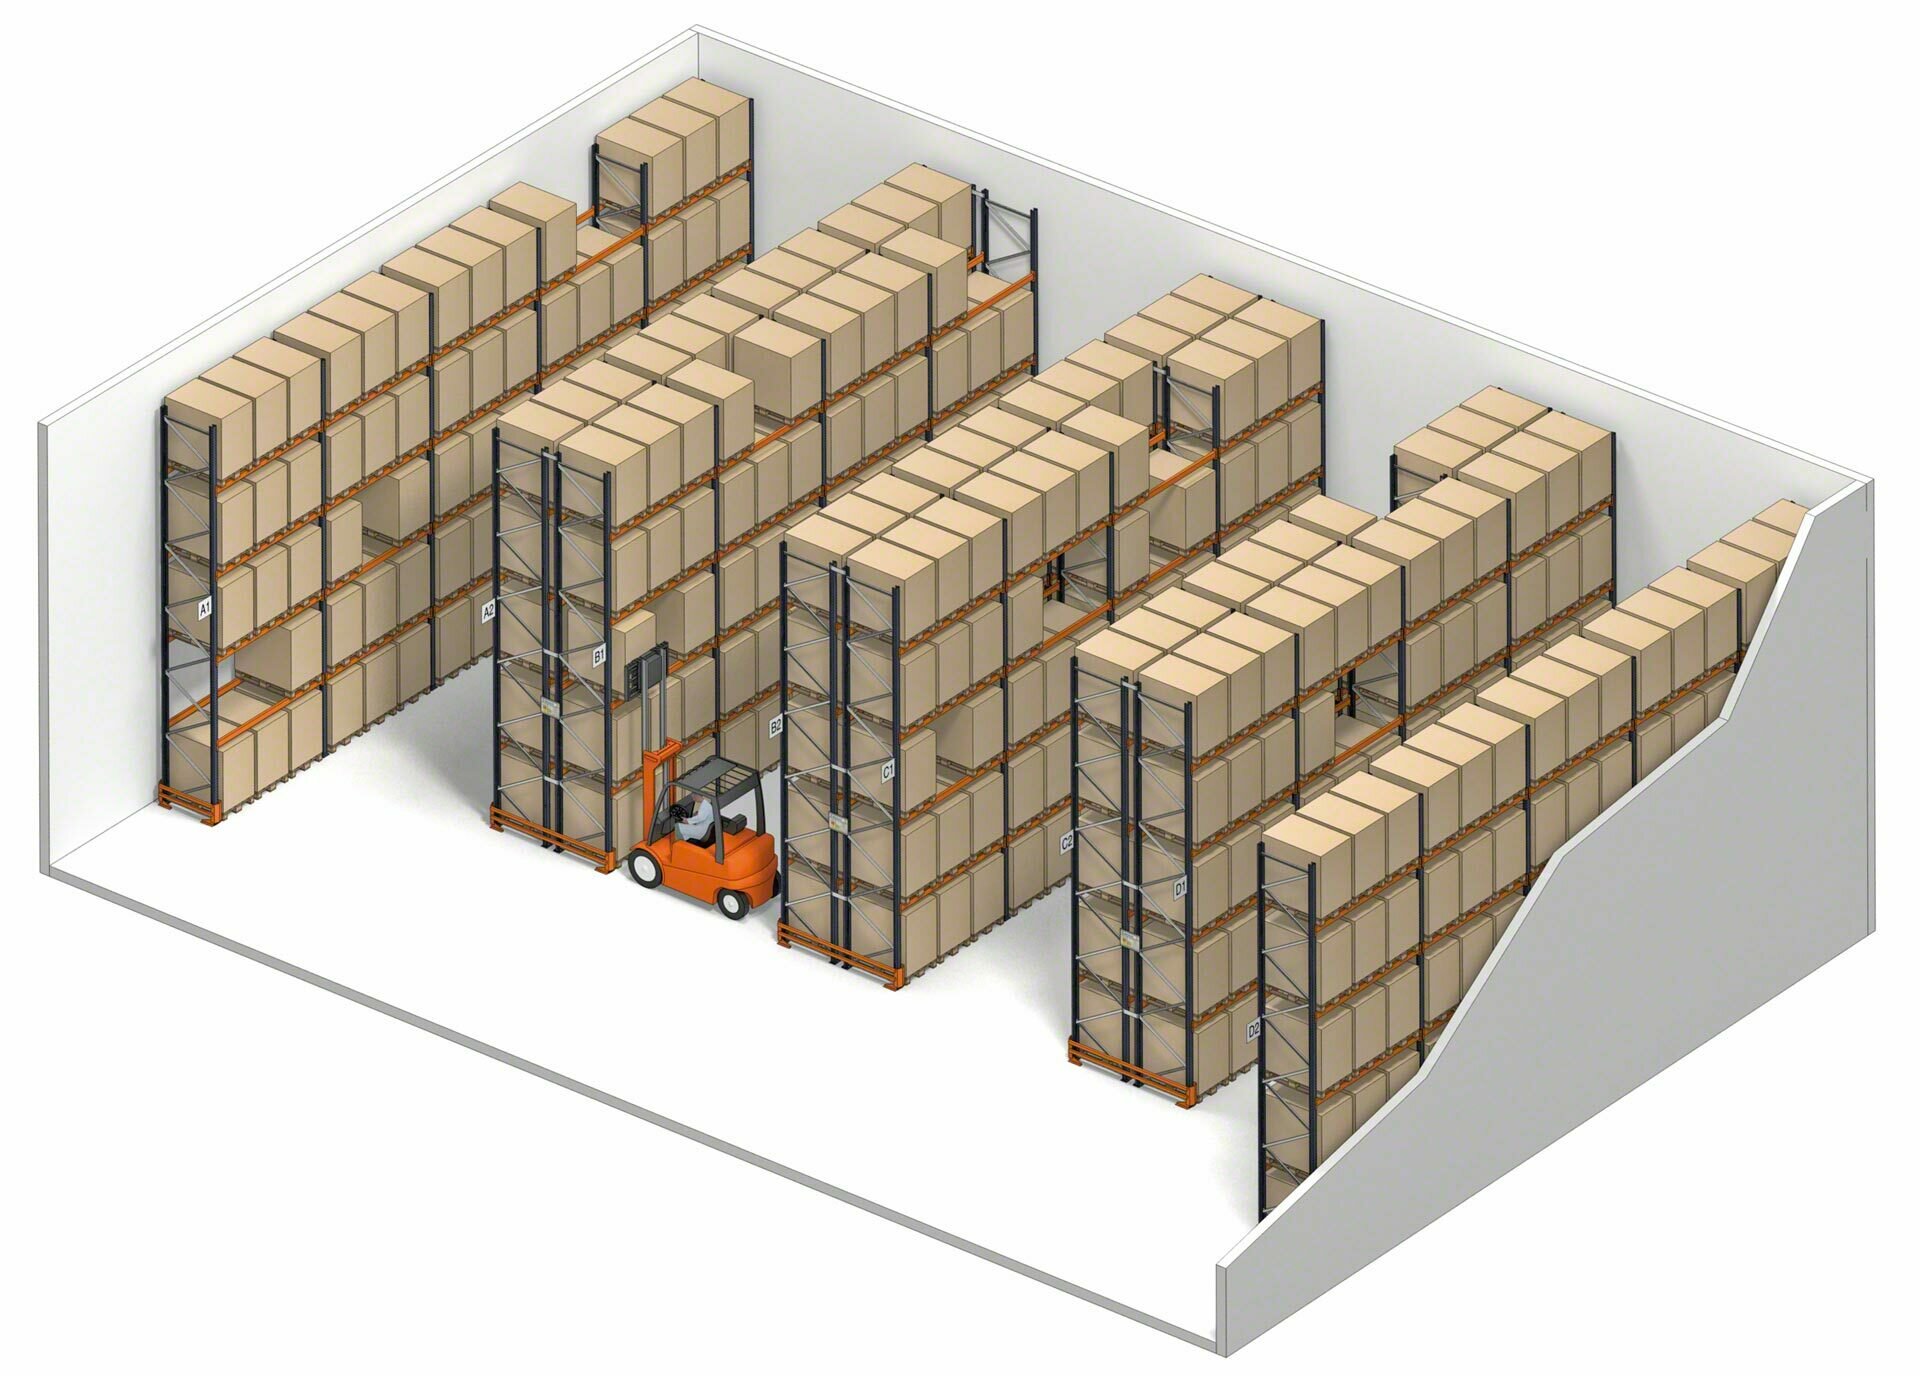 Las estanterías de simple profundidad ofrecen acceso directo a cada unidad de carga